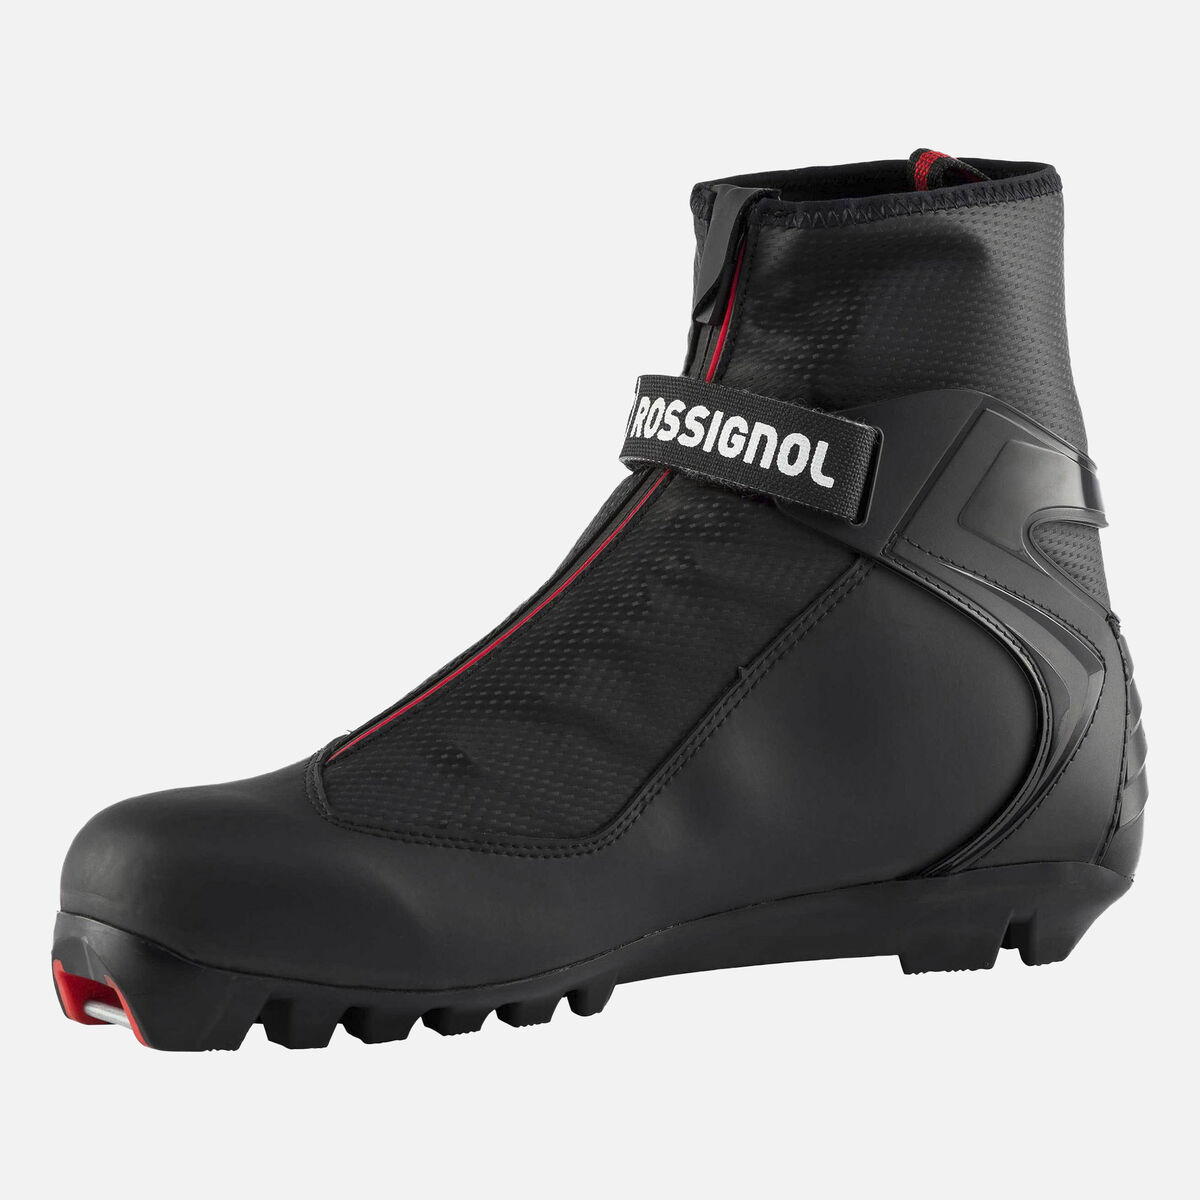 Rossignol Unisex Nordic TOURING Boots XC-3 multicolor